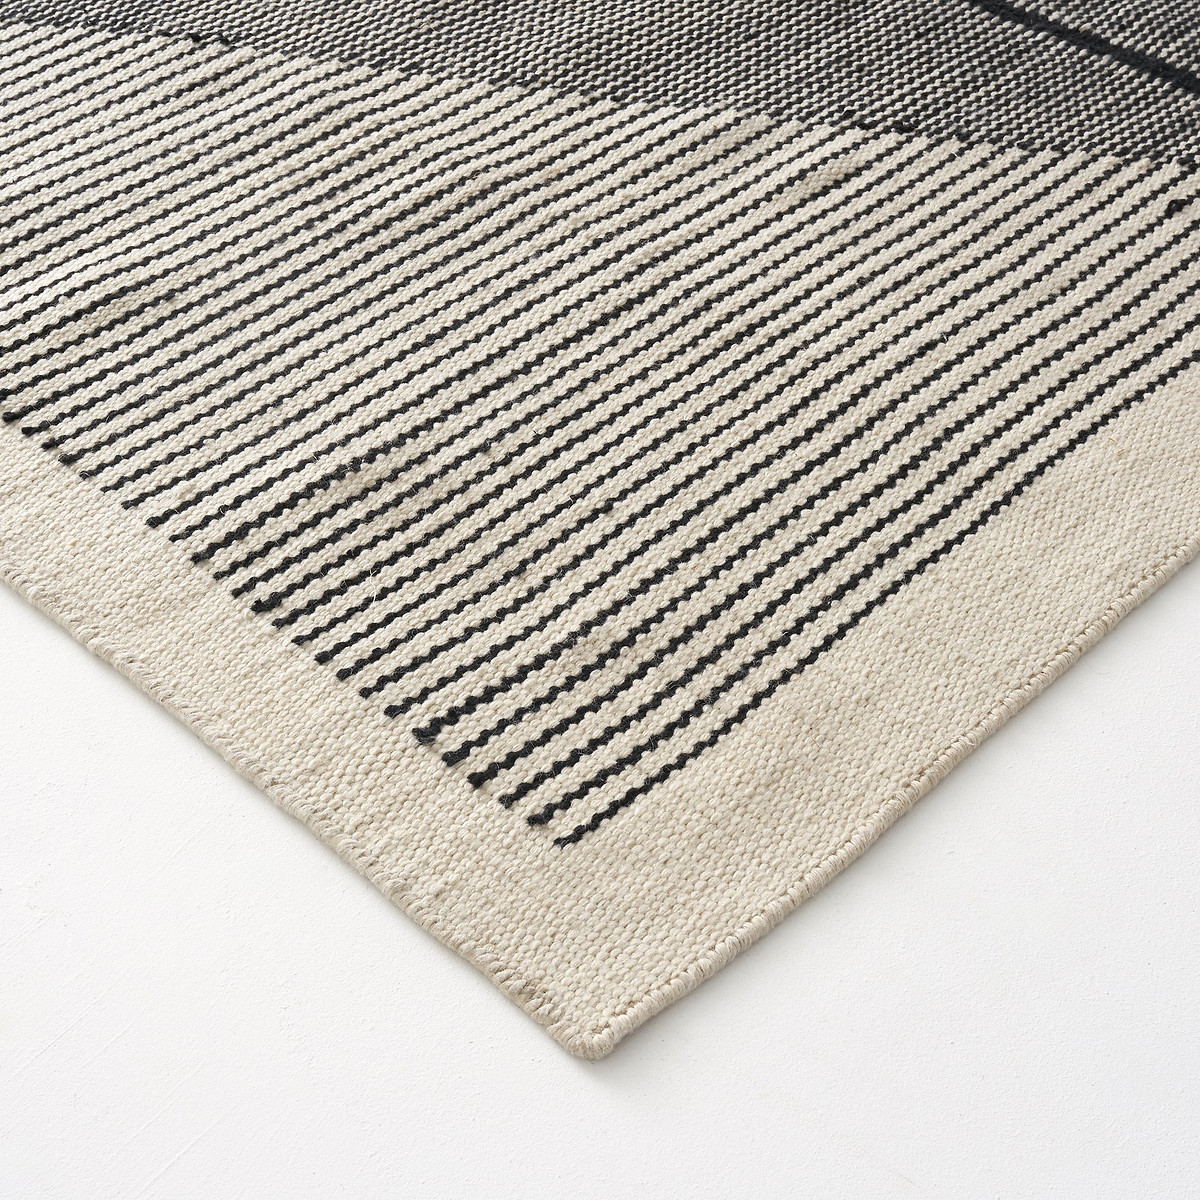 Ковер La Redoute Килим с горизонтальным плетением Loscan 160 x 230 см черный, размер 160 x 230 см - фото 2